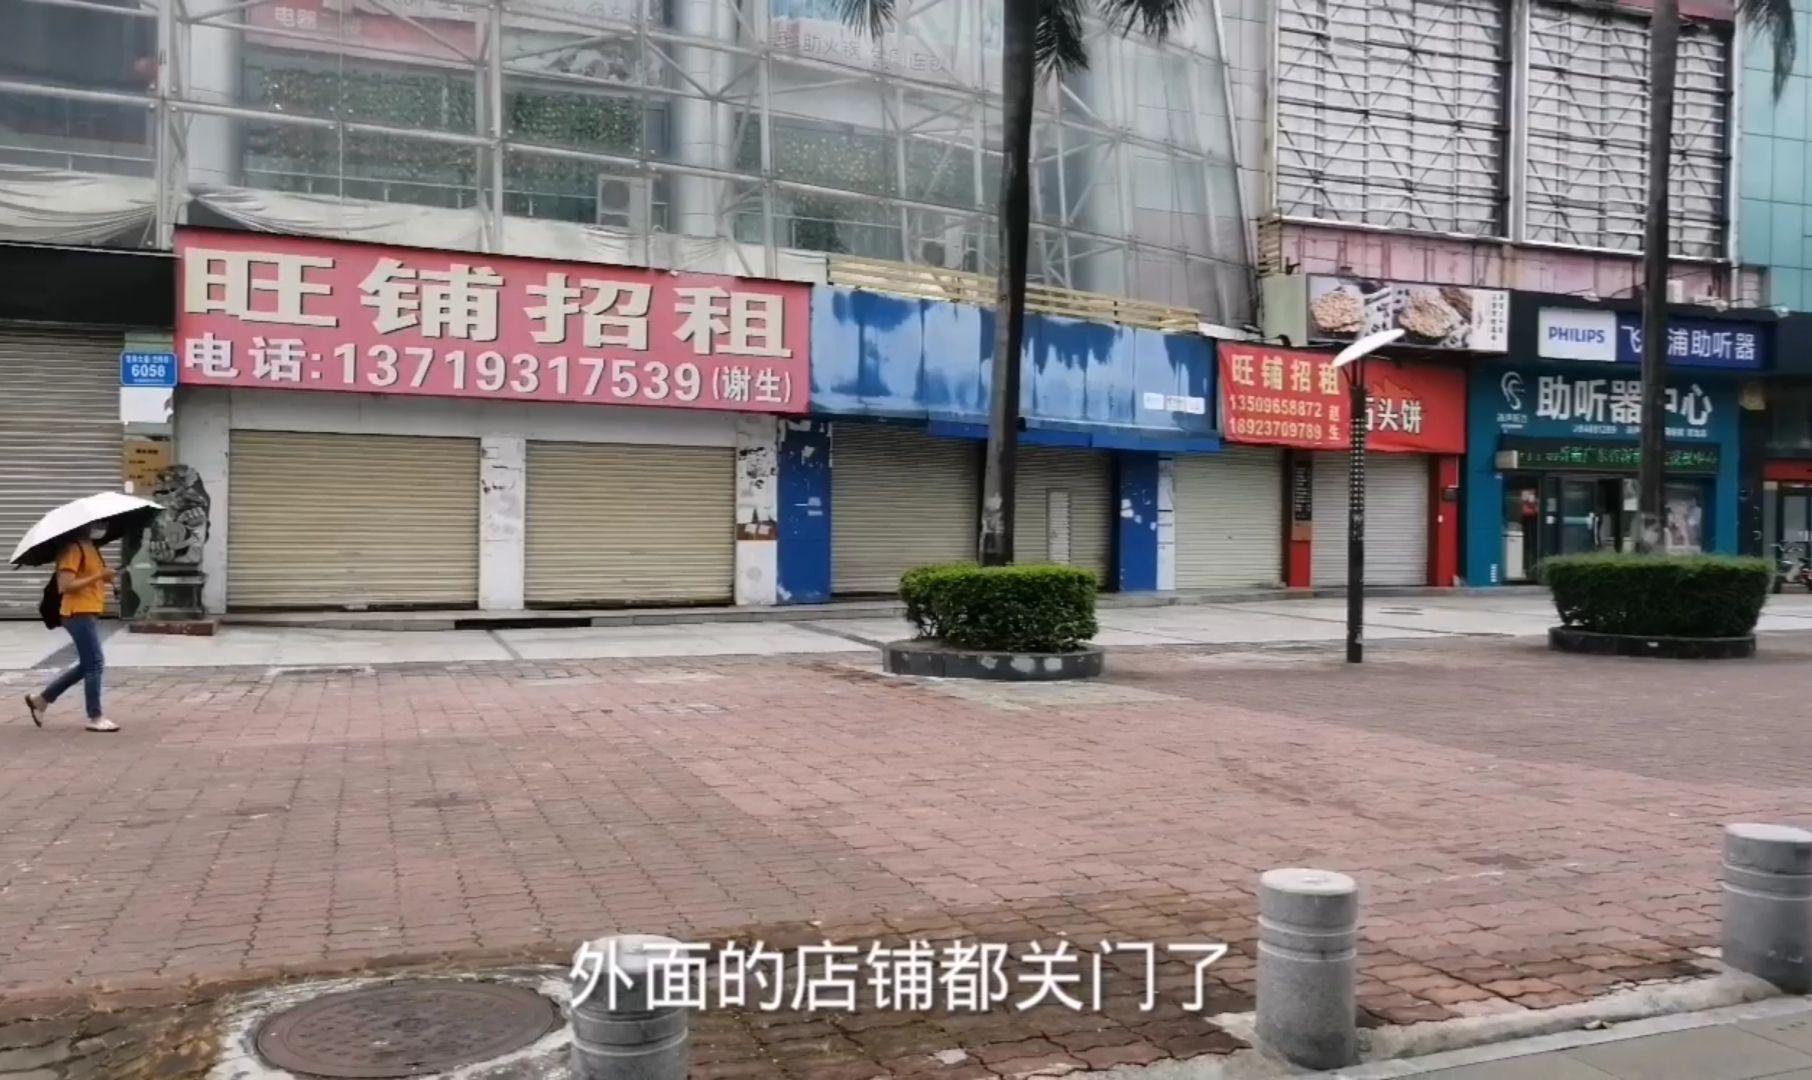 重庆大型商场倒闭,屈臣氏肯德基全撤离,整片商圈建筑漂亮却没有一个人